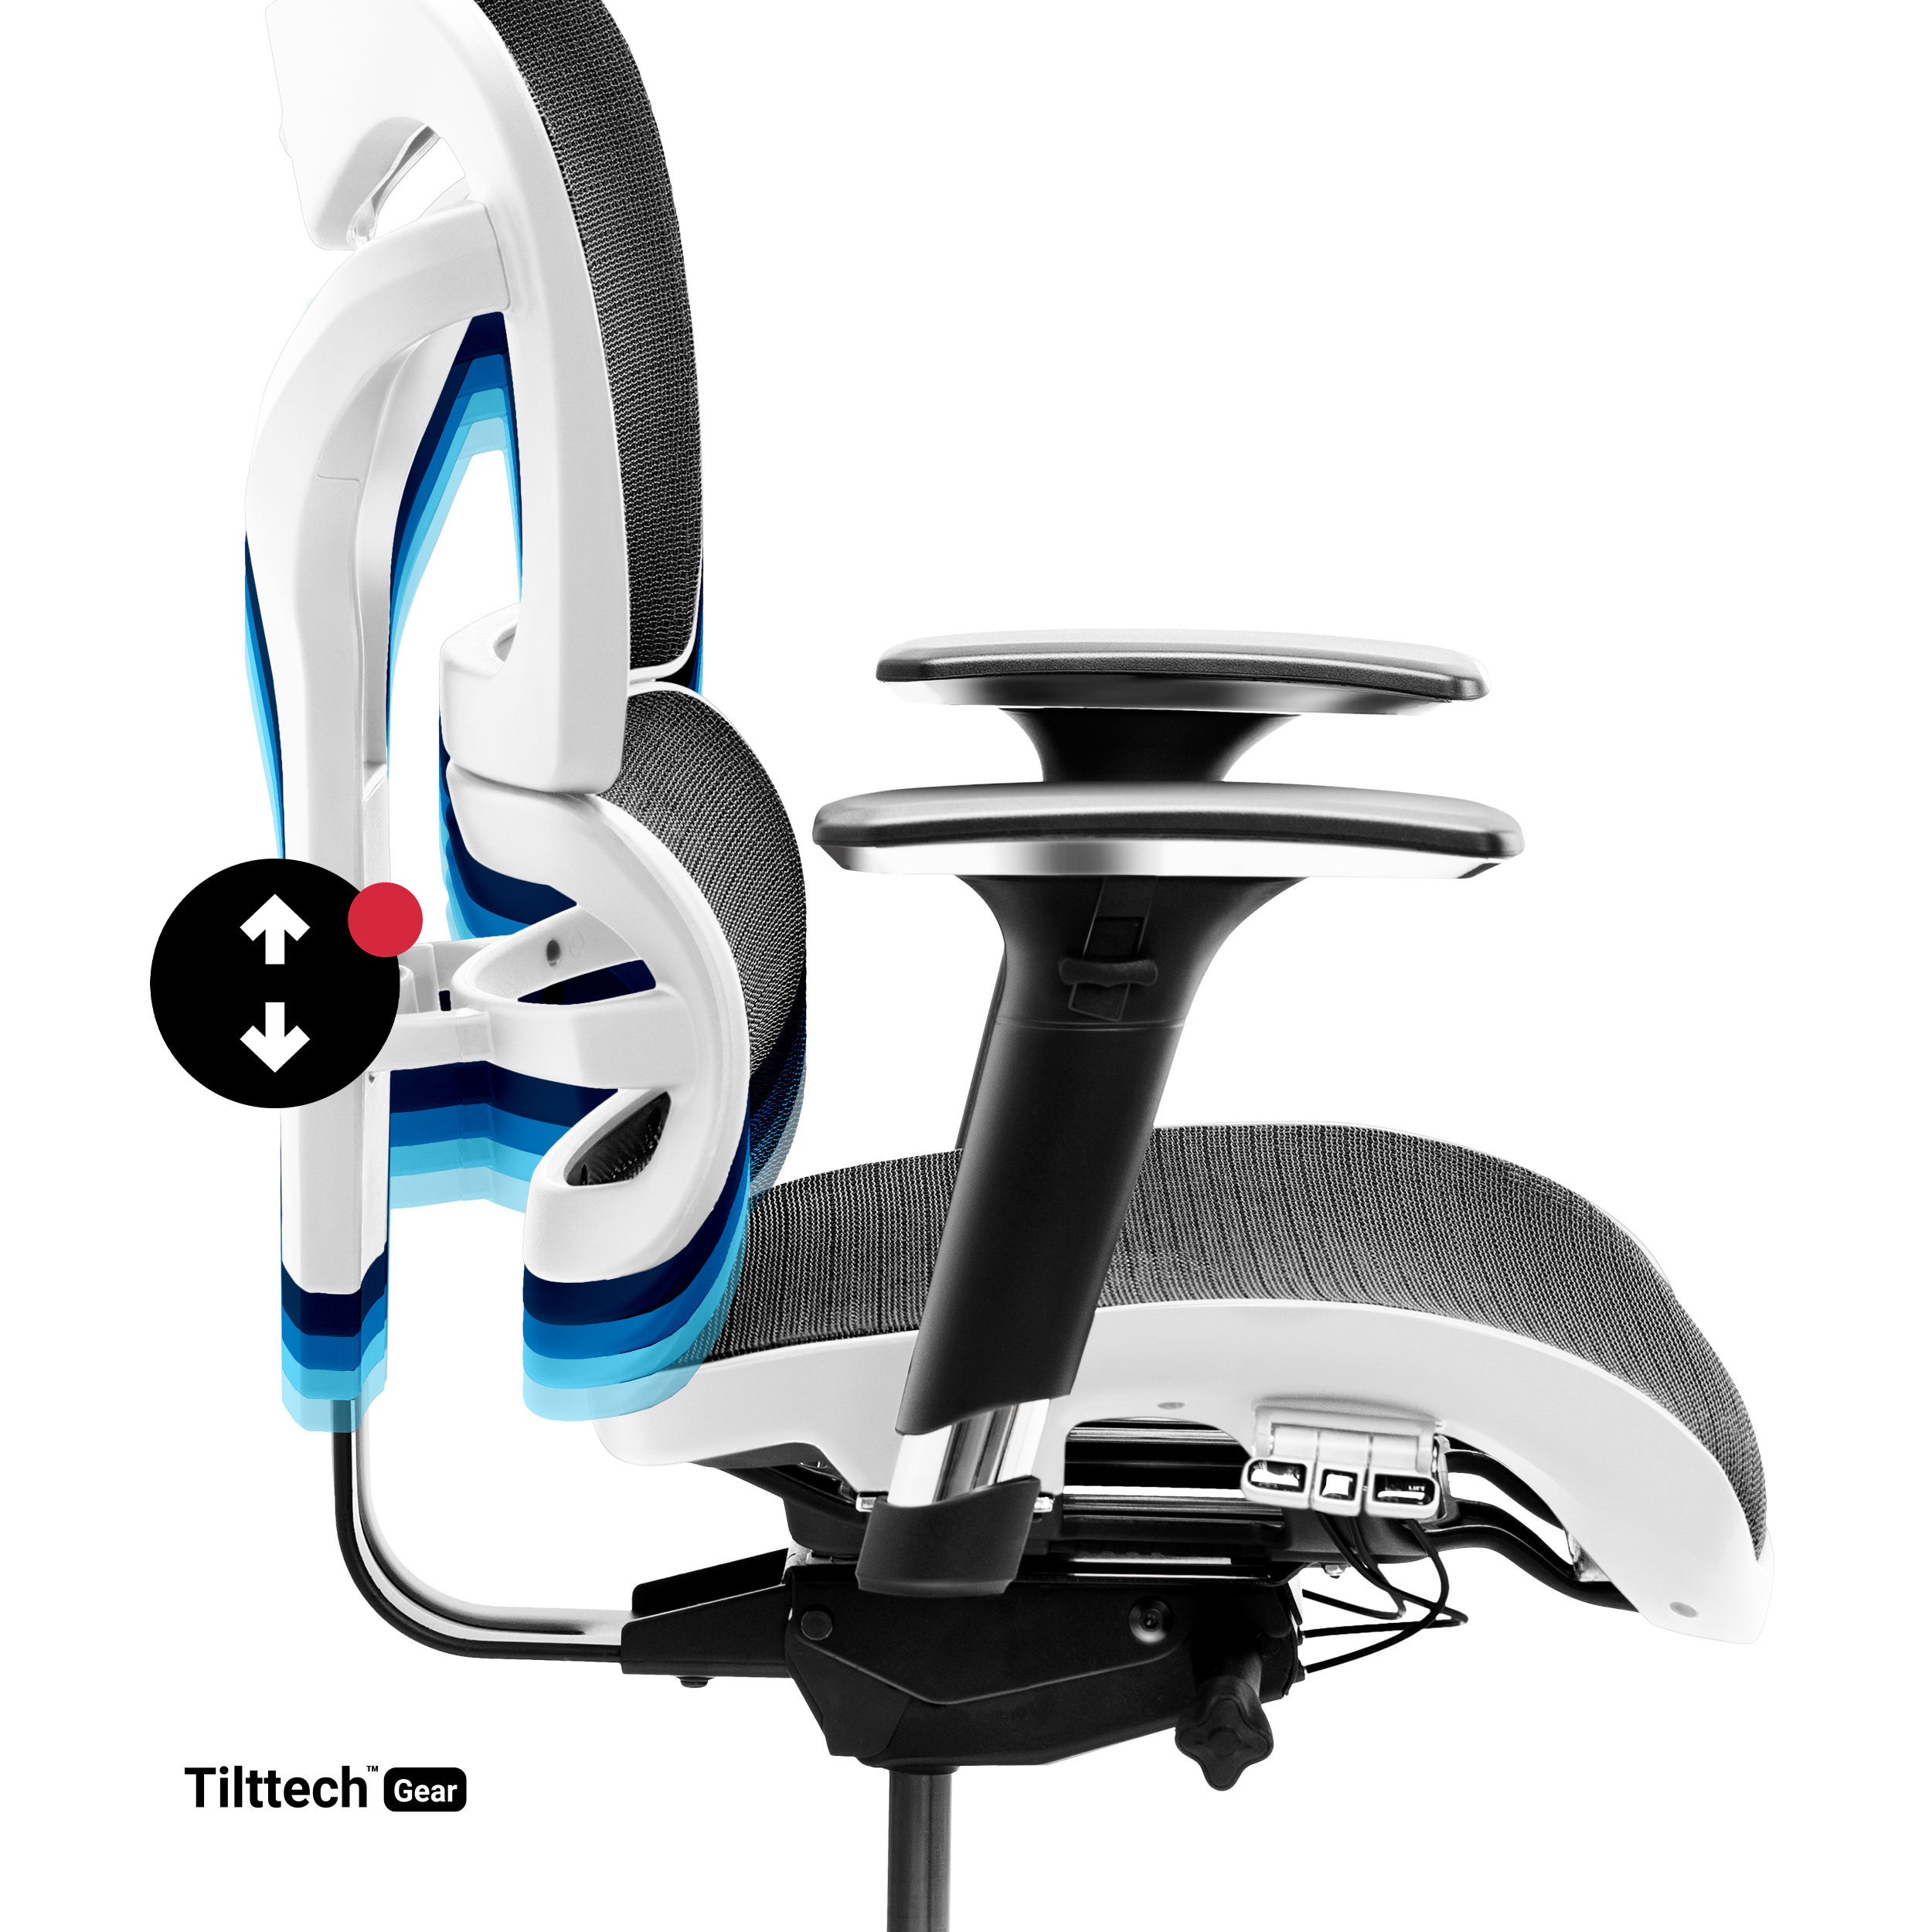 Ergonomischer schwarz-weiß DIABLO Bürostuhl | Stuhl | Schreibtischstuhl V-COMMANDER CHAIRS BÜROSTUHL